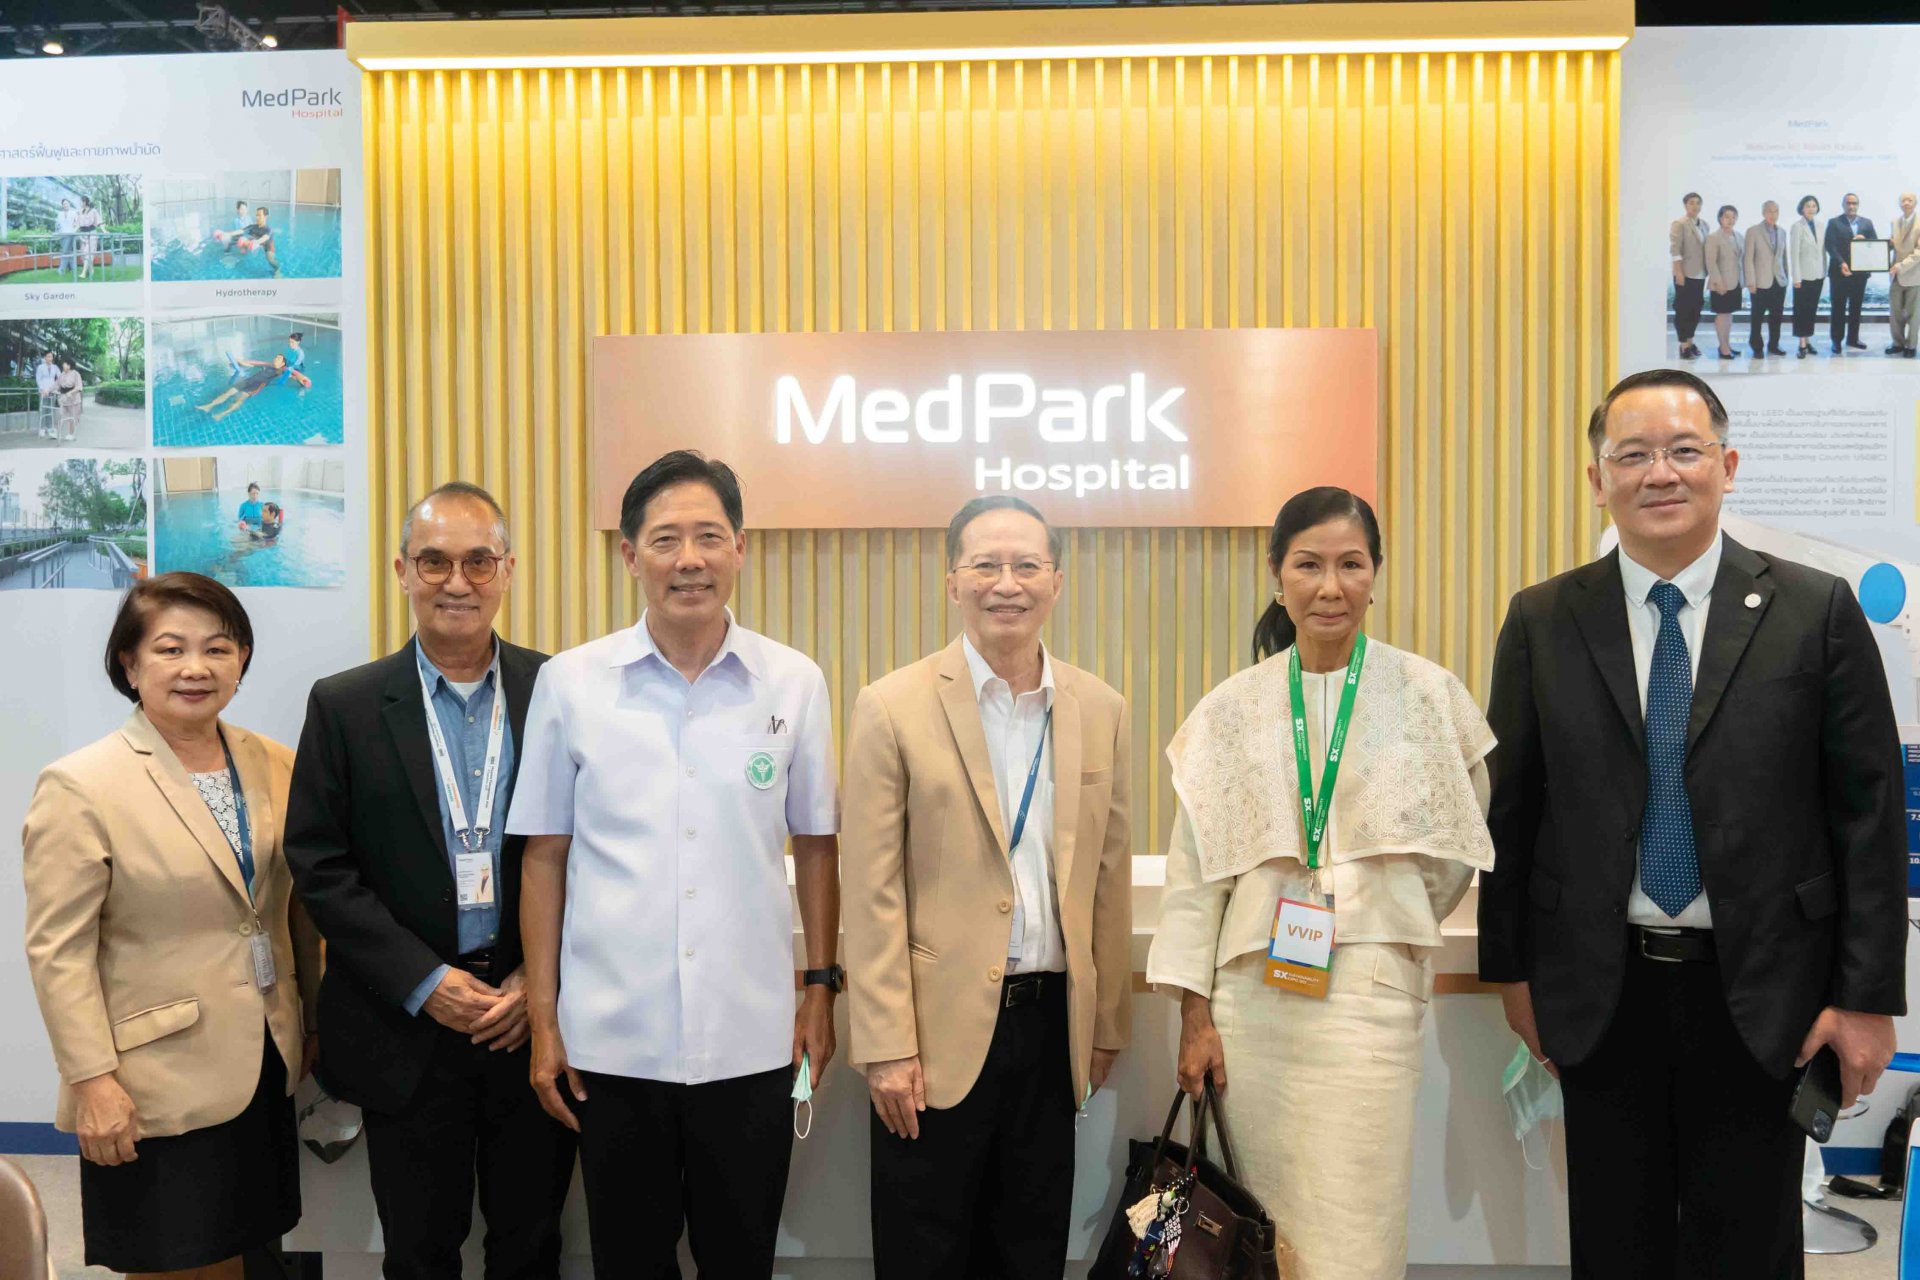 รพ.เมดพาร์ค โชว์นวัตกรรมและเทคโนโลยีด้านการแพทย์ และการออกแบบ รพ. อย่างยั่งยืน ในงาน Sustainability Expo 2022